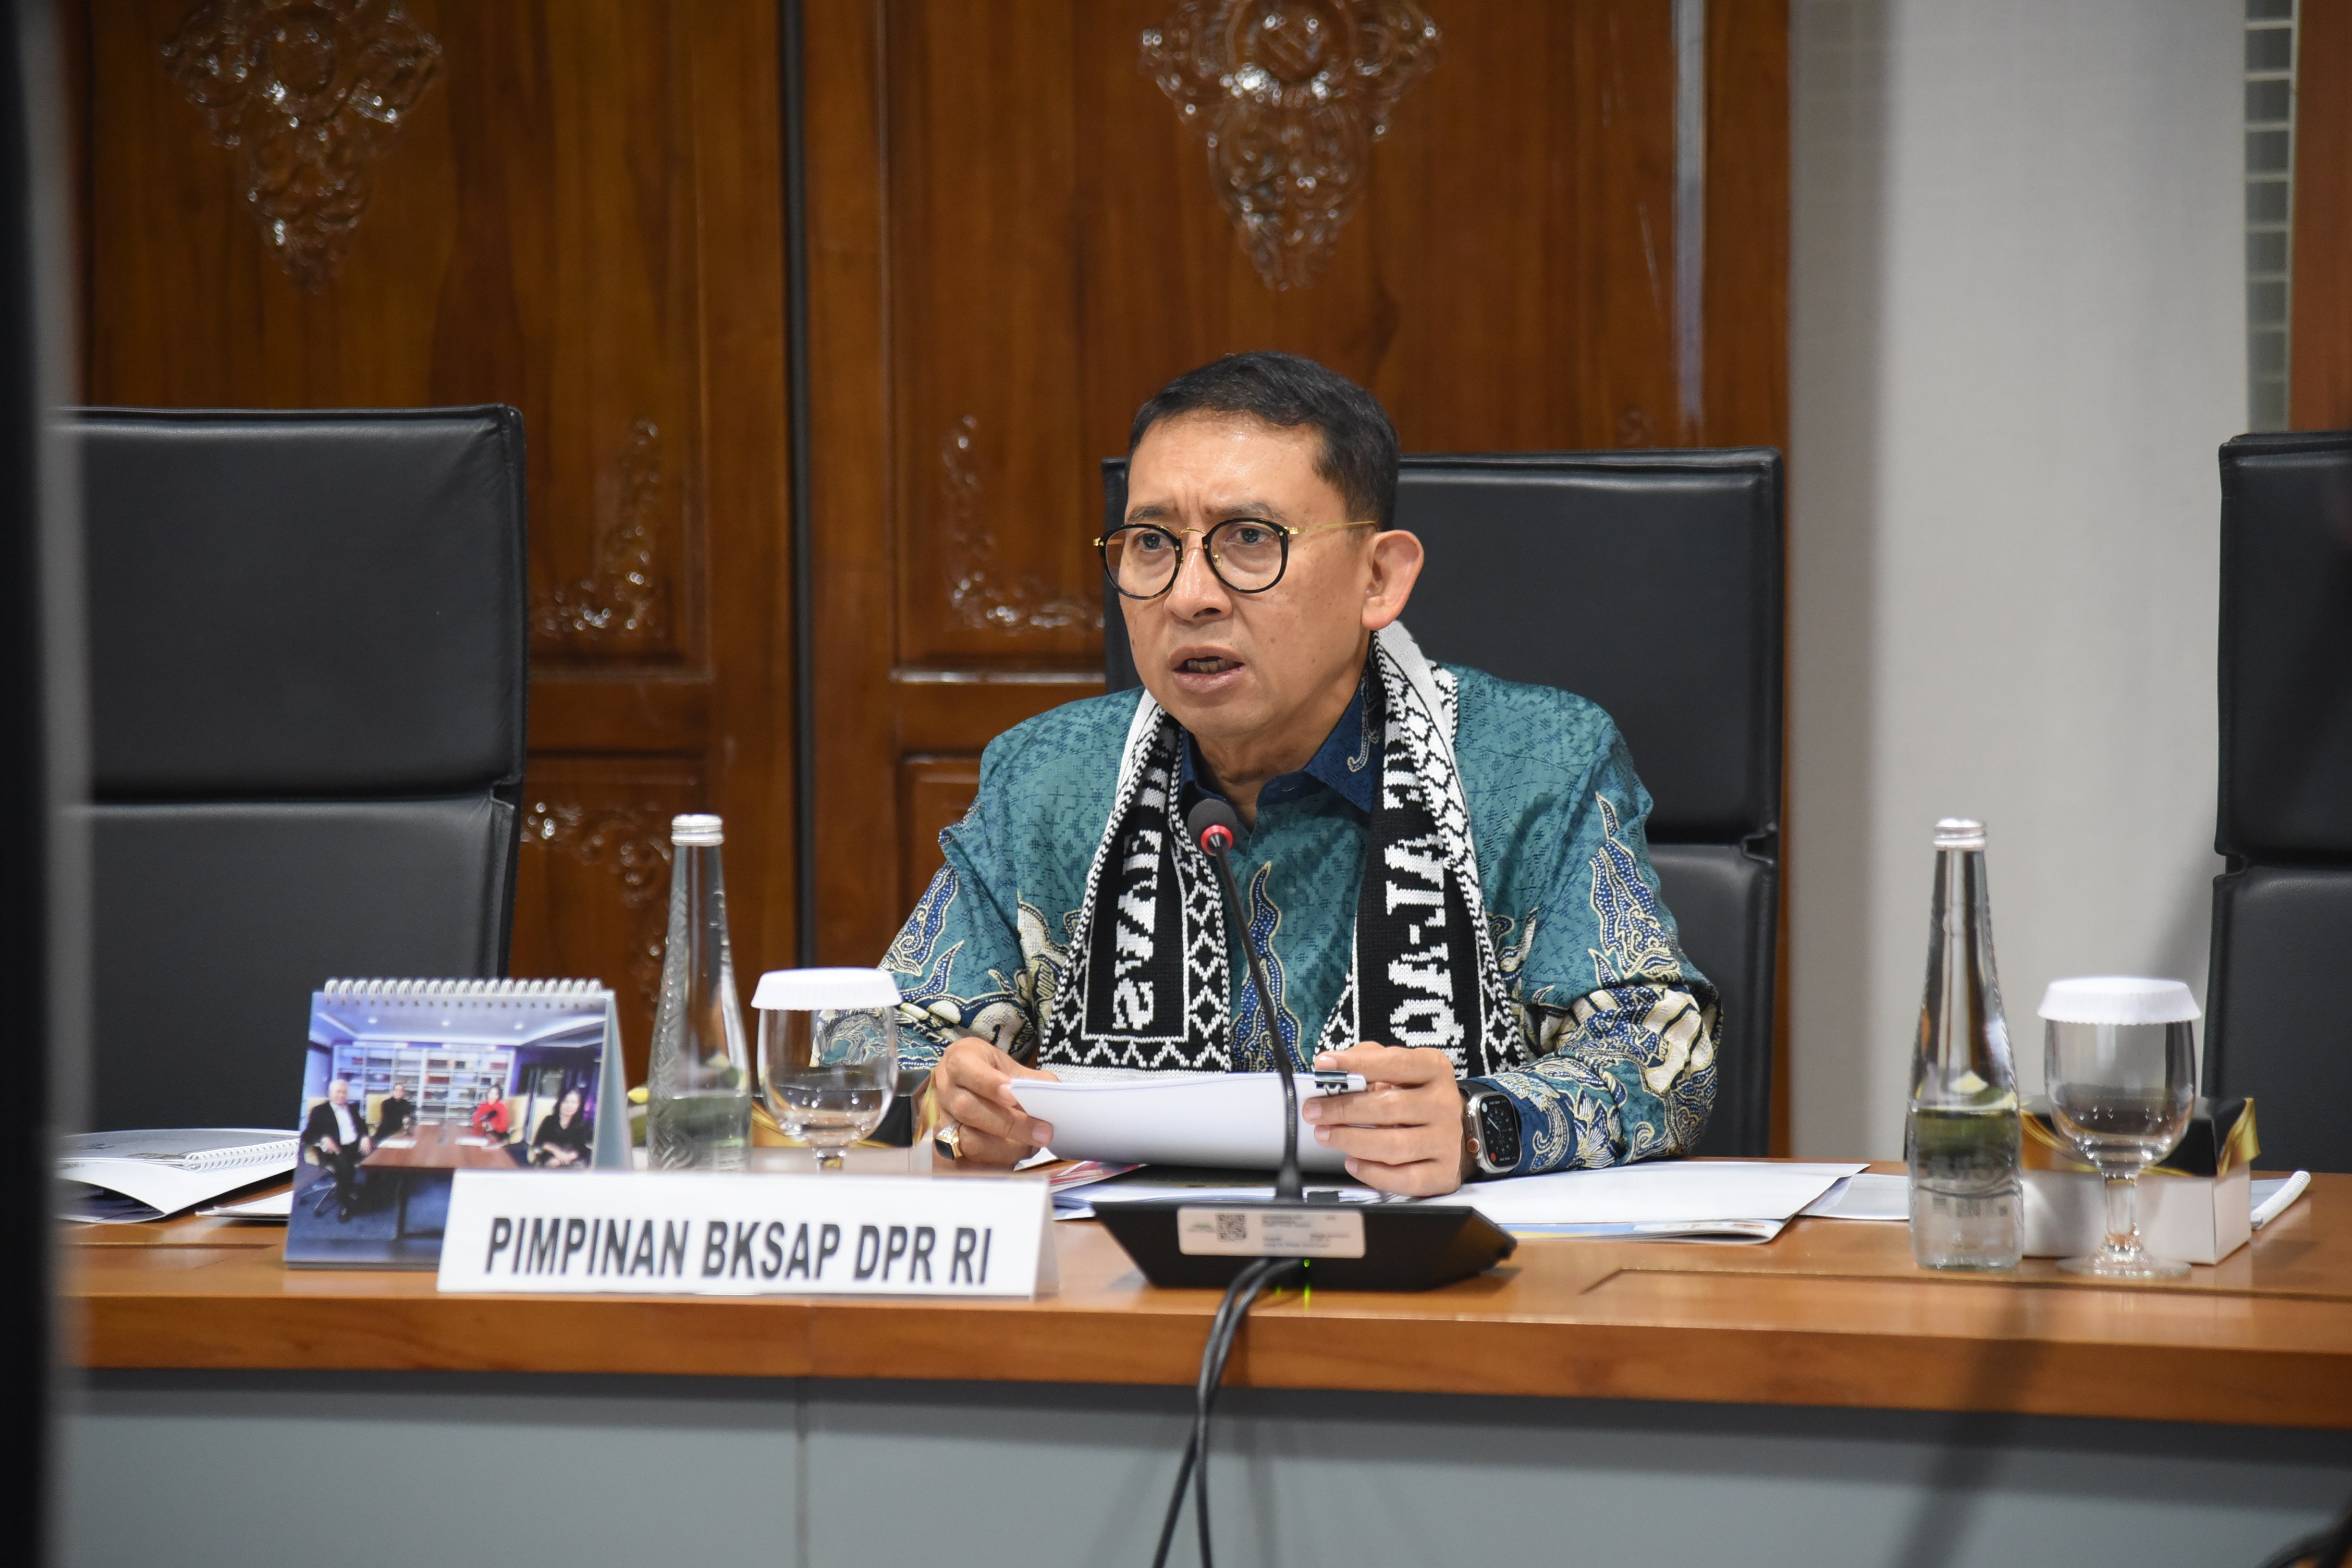 Ketua BKSAP: Indonesia Siap Gelar Pertemuan Kedua dengan Parlemen Negara Kawasan Pasifik